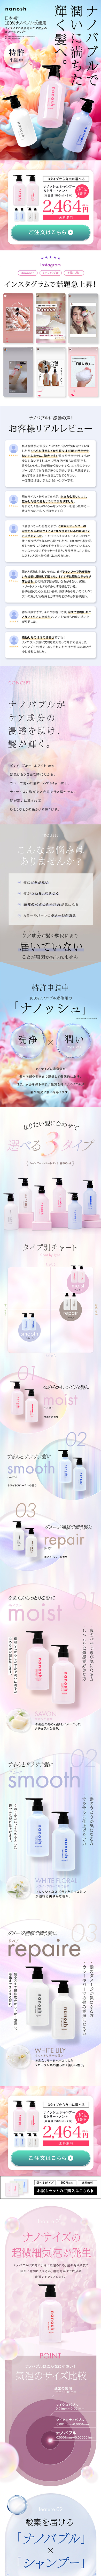 nanosu shampoo_sp_1